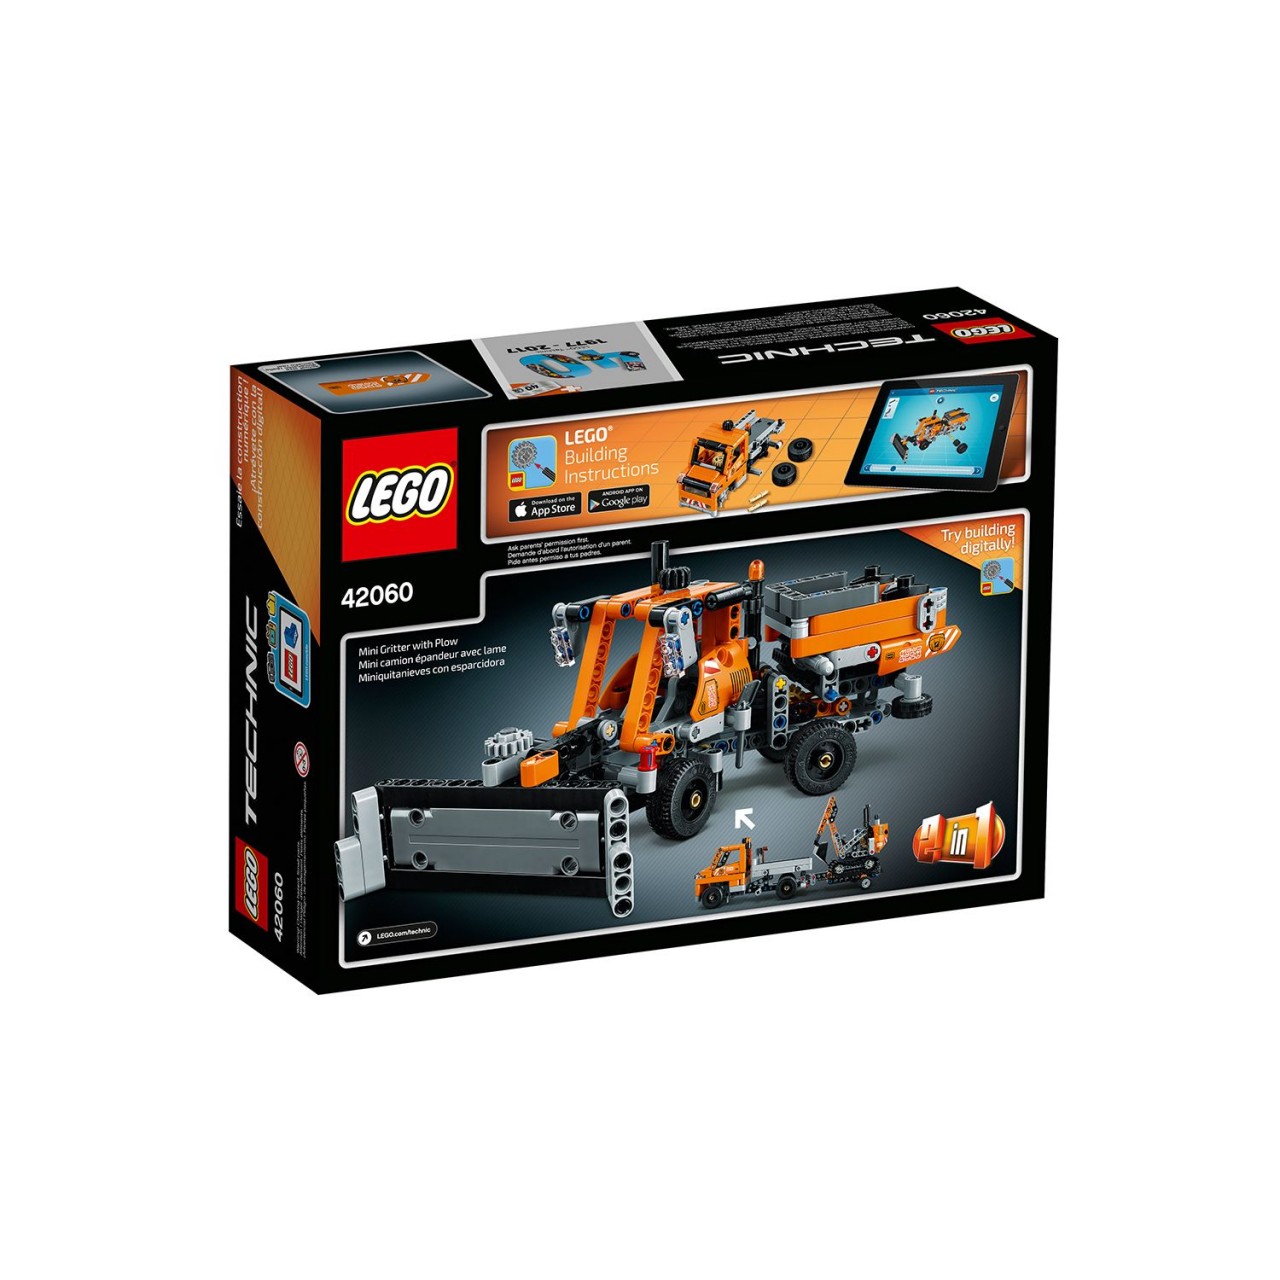 LEGO TECHNIC 42060 Straßenbau-Fahrzeuge